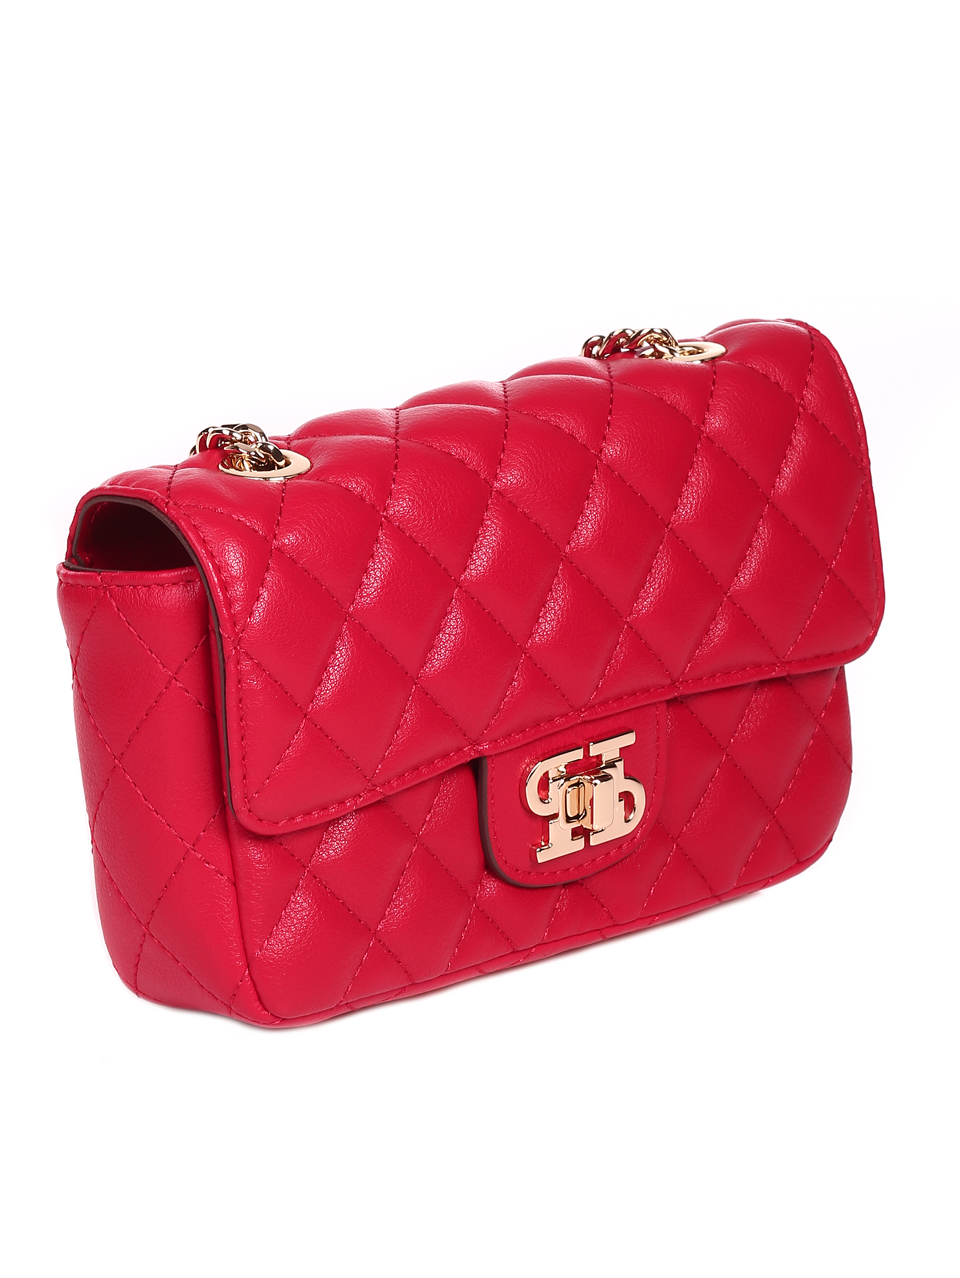 Елегантна дамска чанта в червено от естествена кожа JT21048 red